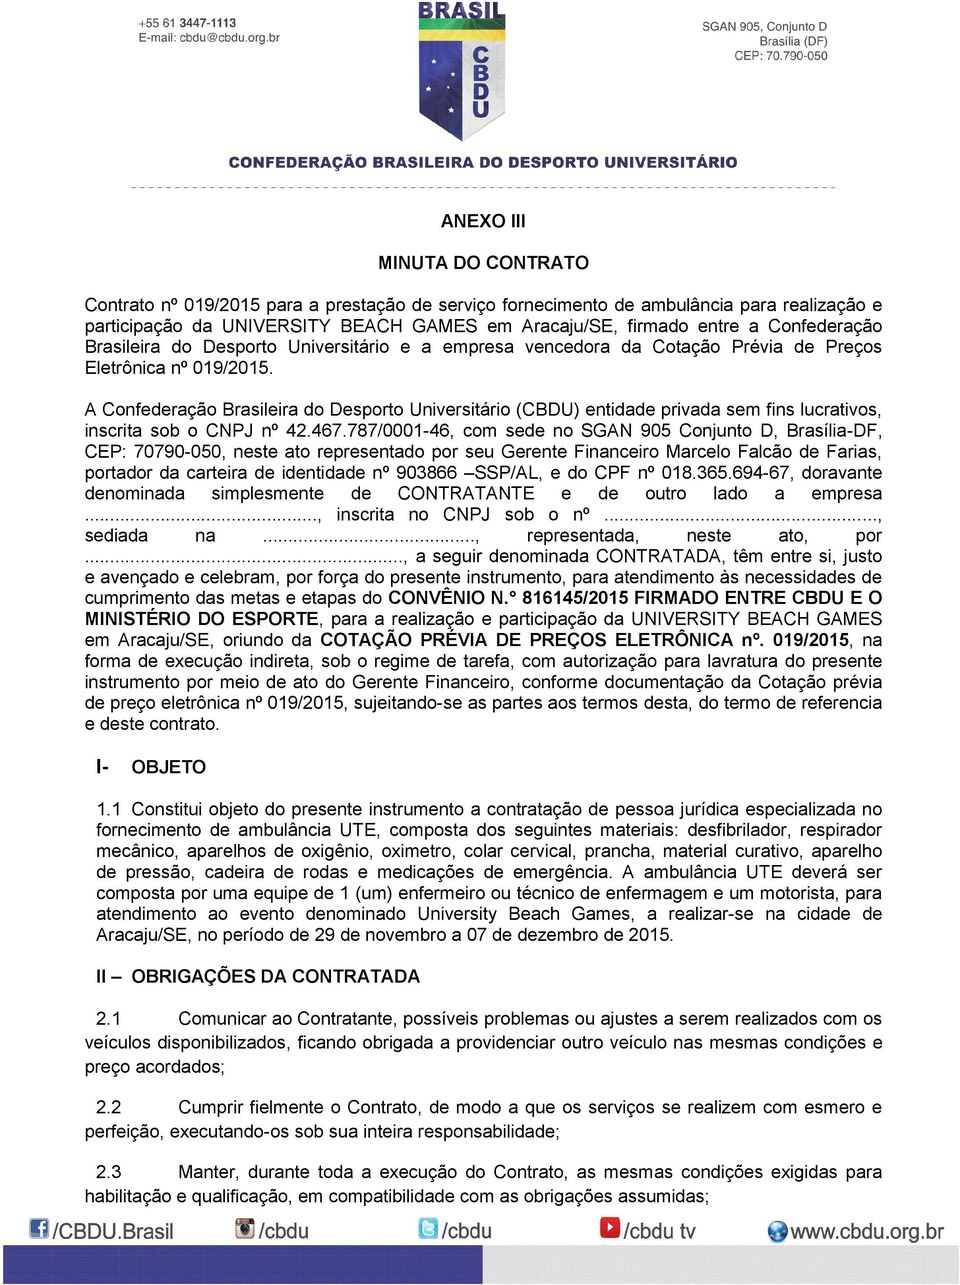 A Confederação Brasileira do Desporto Universitário (CBDU) entidade privada sem fins lucrativos, inscrita sob o CNPJ nº 42.467.